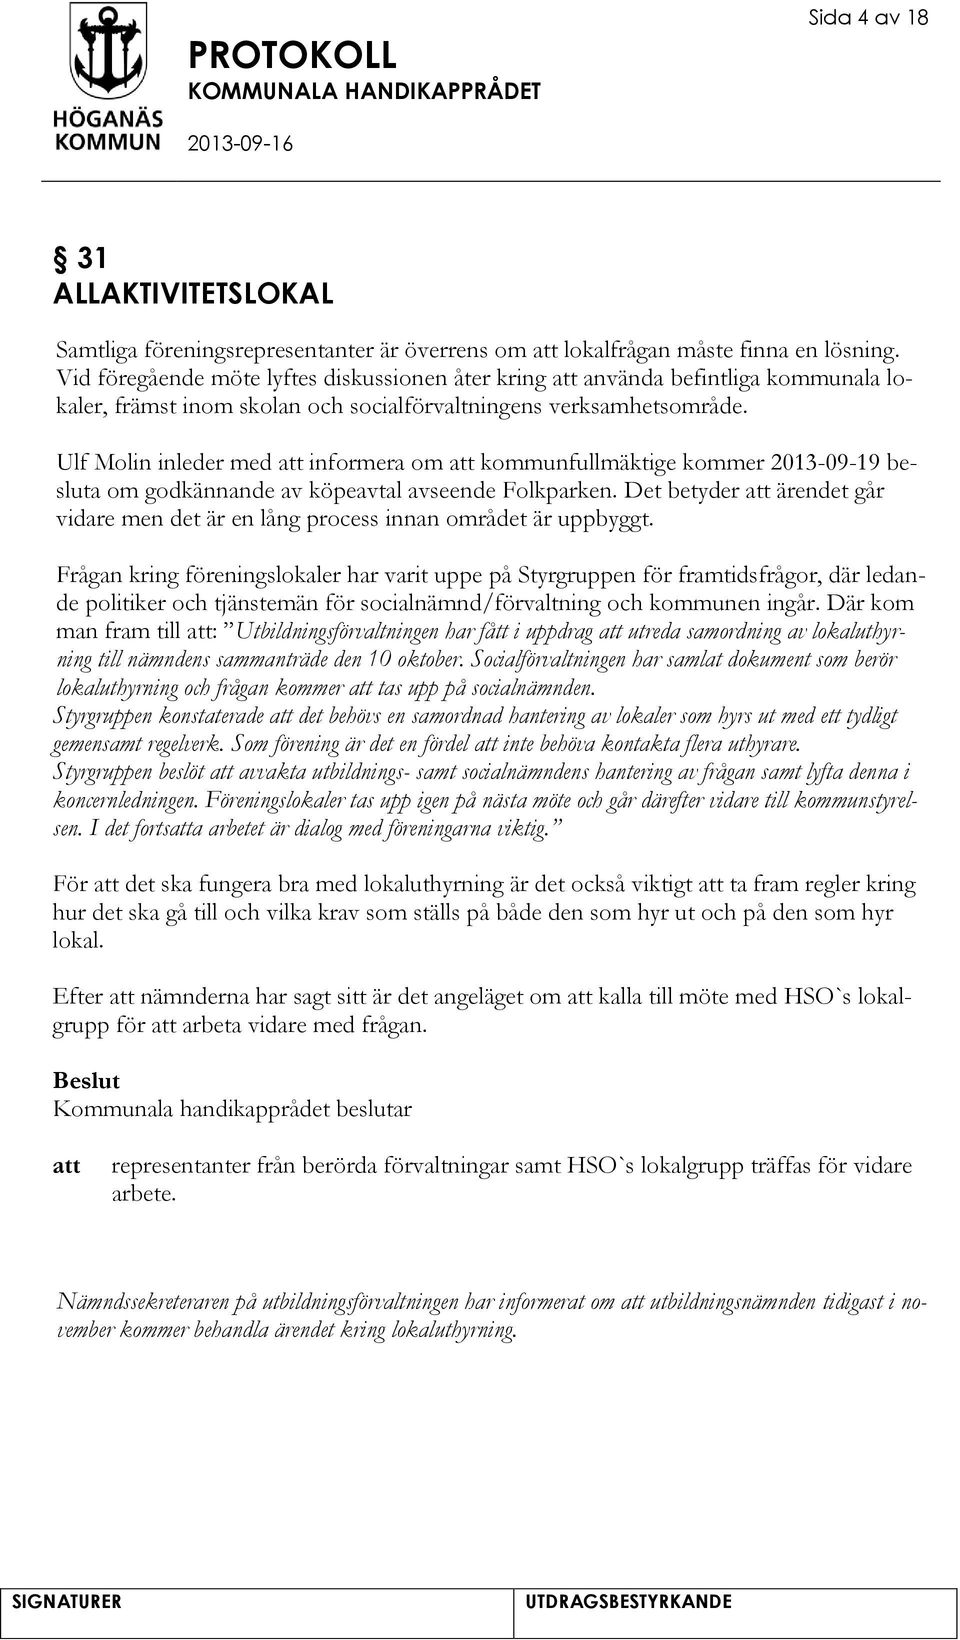 Ulf Molin inleder med informera om kommunfullmäktige kommer 2013-09-19 besluta om godkännande av köpeavtal avseende Folkparken.